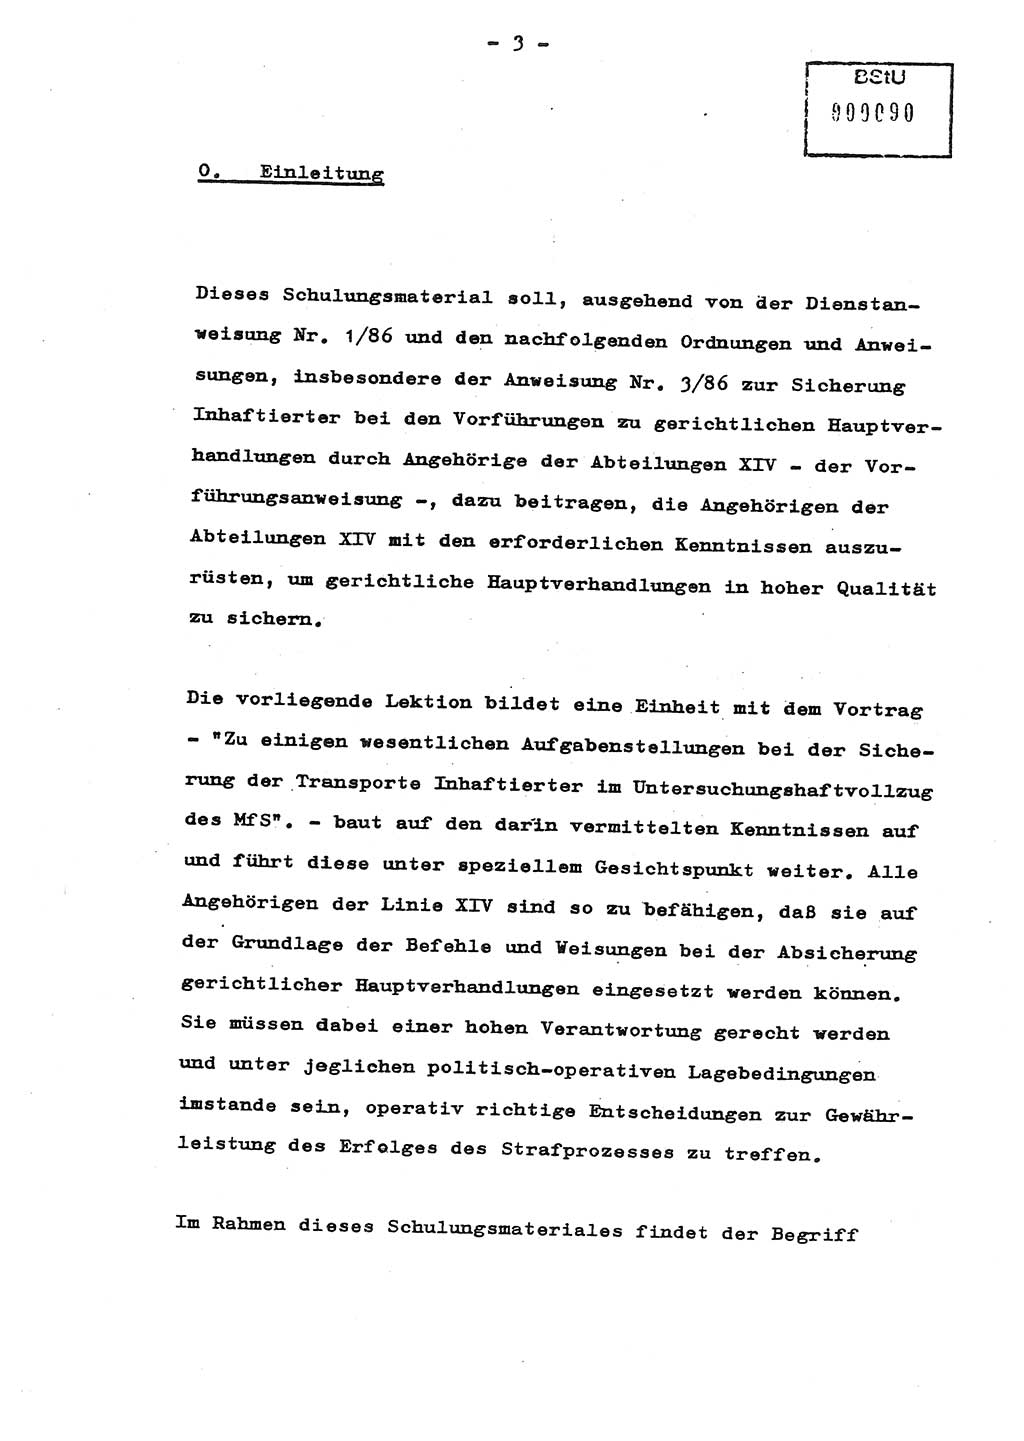 Schulungsmaterial Exemplar-Nr.: 8, Ministerium für Staatssicherheit [Deutsche Demokratische Republik (DDR)], Abteilung (Abt.) ⅩⅣ, Berlin 1987, Seite 3 (Sch.-Mat. Expl. 8 MfS DDR Abt. ⅩⅣ /87 1987, S. 3)